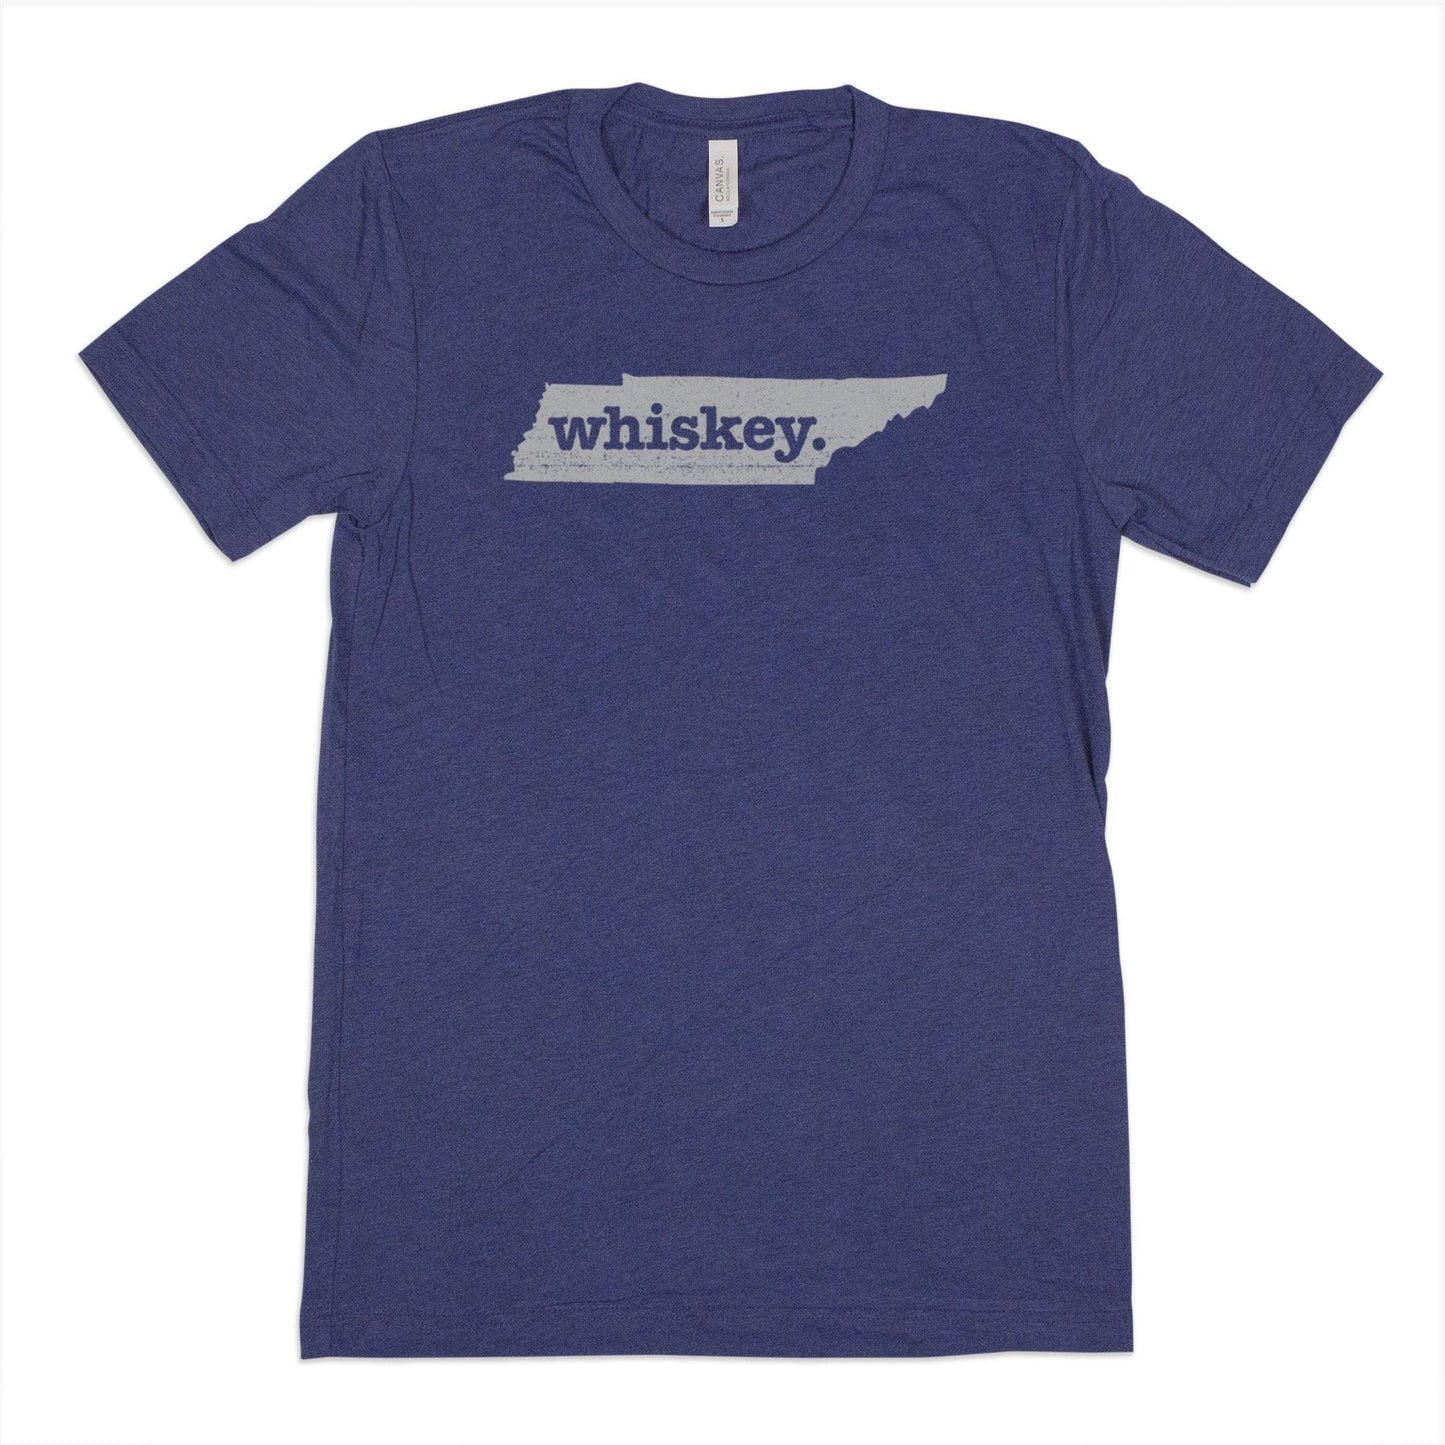 bike. Men's Unisex T-Shirt - Nebraska